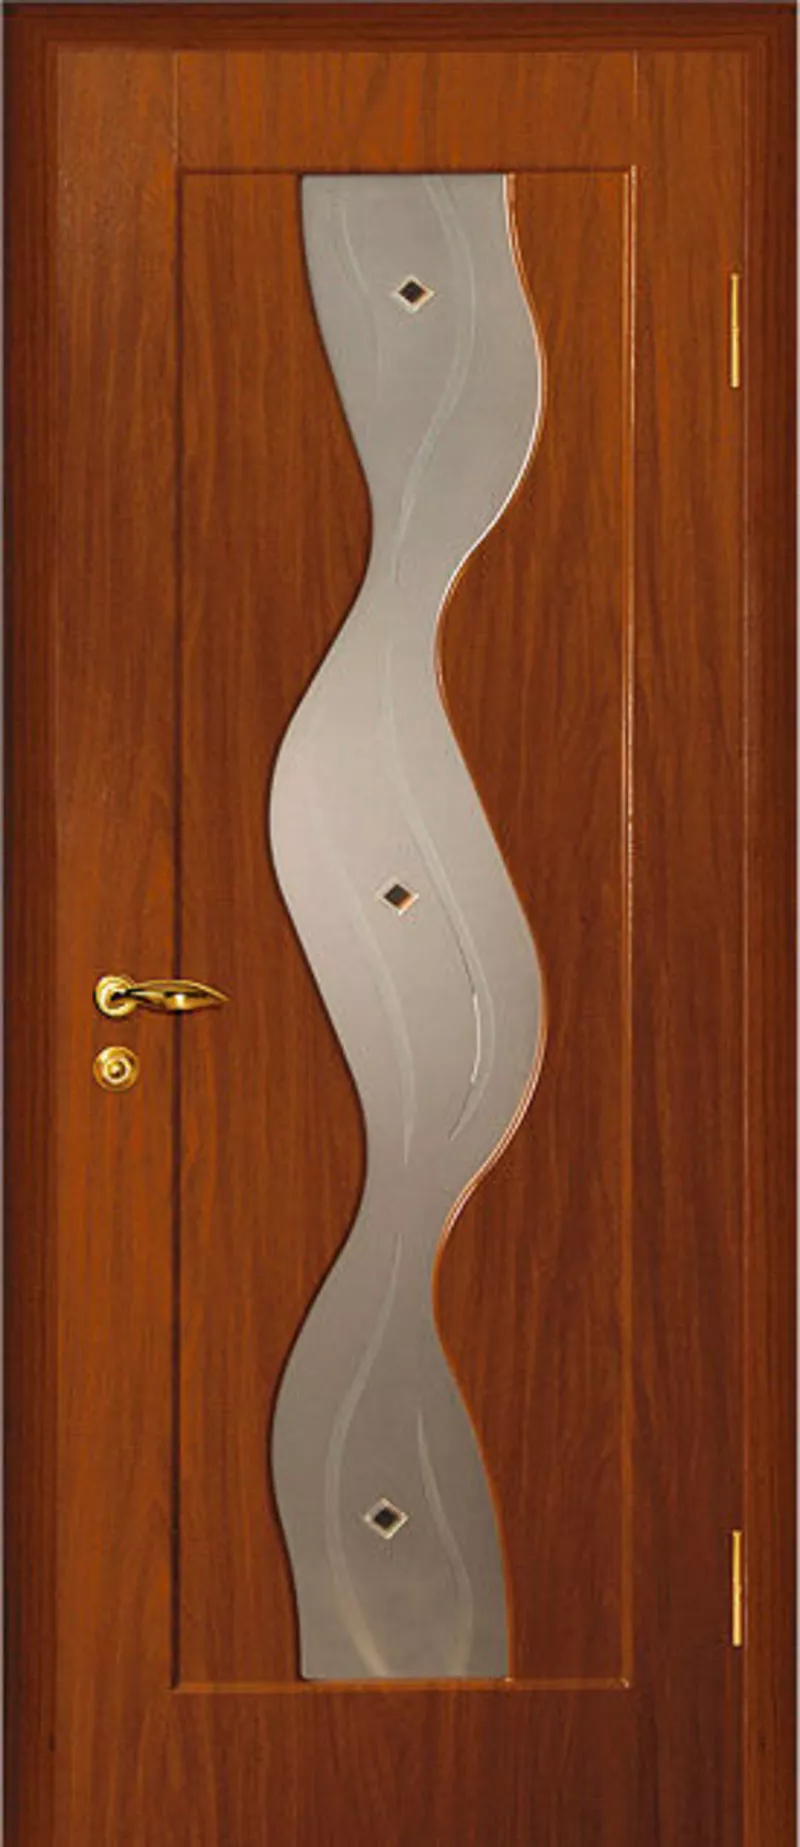 АКЦИЯ дверь МДФ с покрытием плёнки ПВХ от 1100 т.р. в РАССРОЧКУ 0% на 3 месяца в бел. руб 2